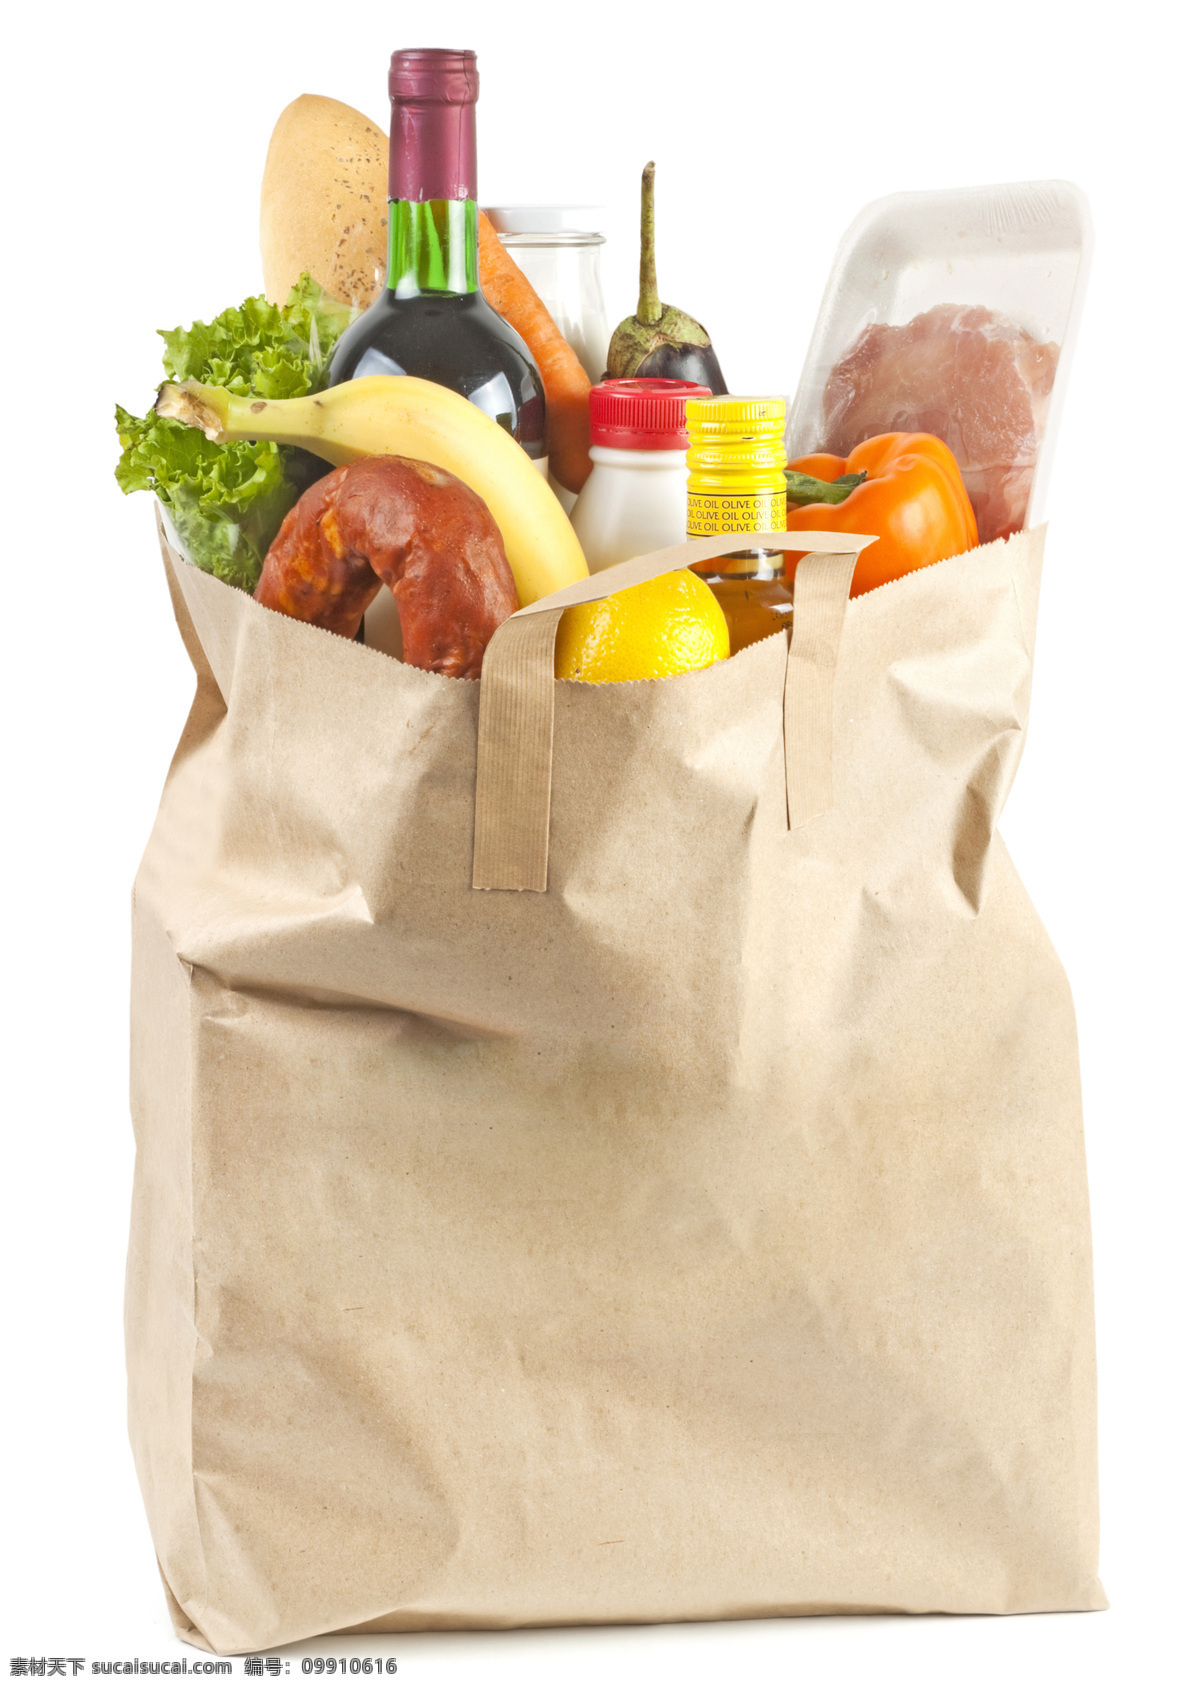 袋子 里 食物 香蕉 面包 红酒 购物袋 青菜 辣椒 水果 蔬菜 超市促销 蔬菜图片 餐饮美食